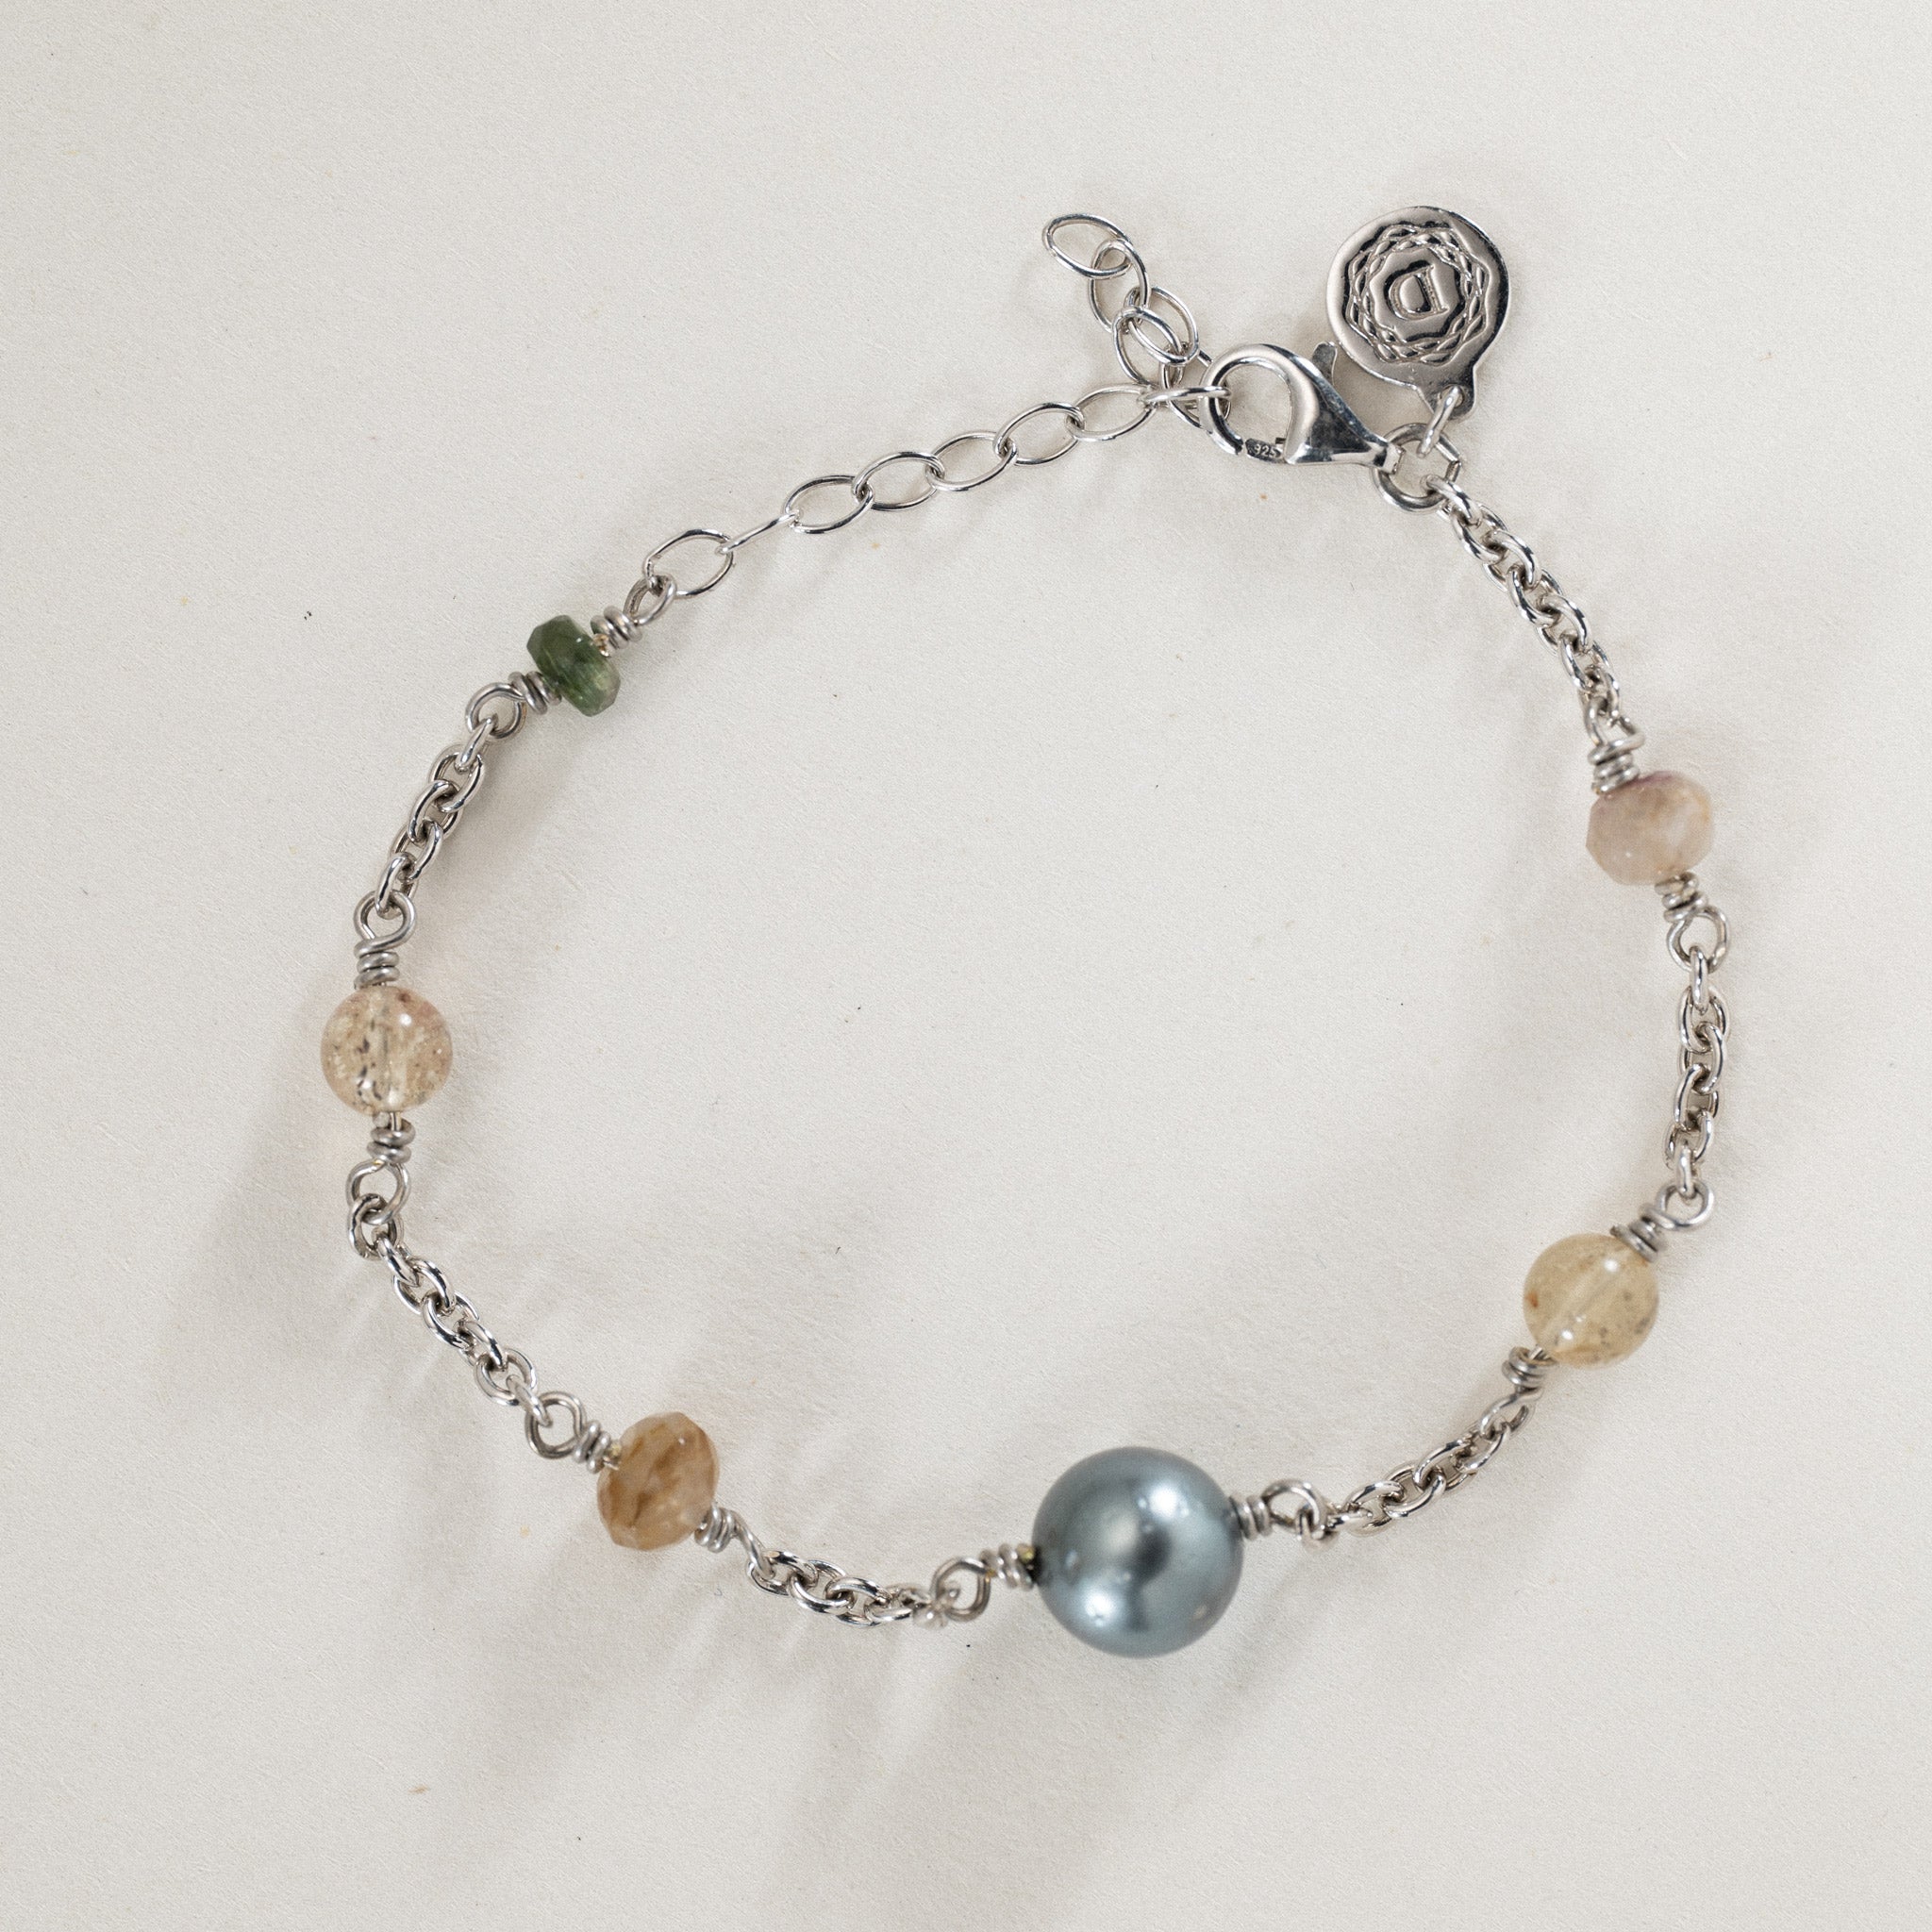 No. 17 - Peacock tahiti pearl & Semi-precious multi color stone bracelet in Rhodium silver